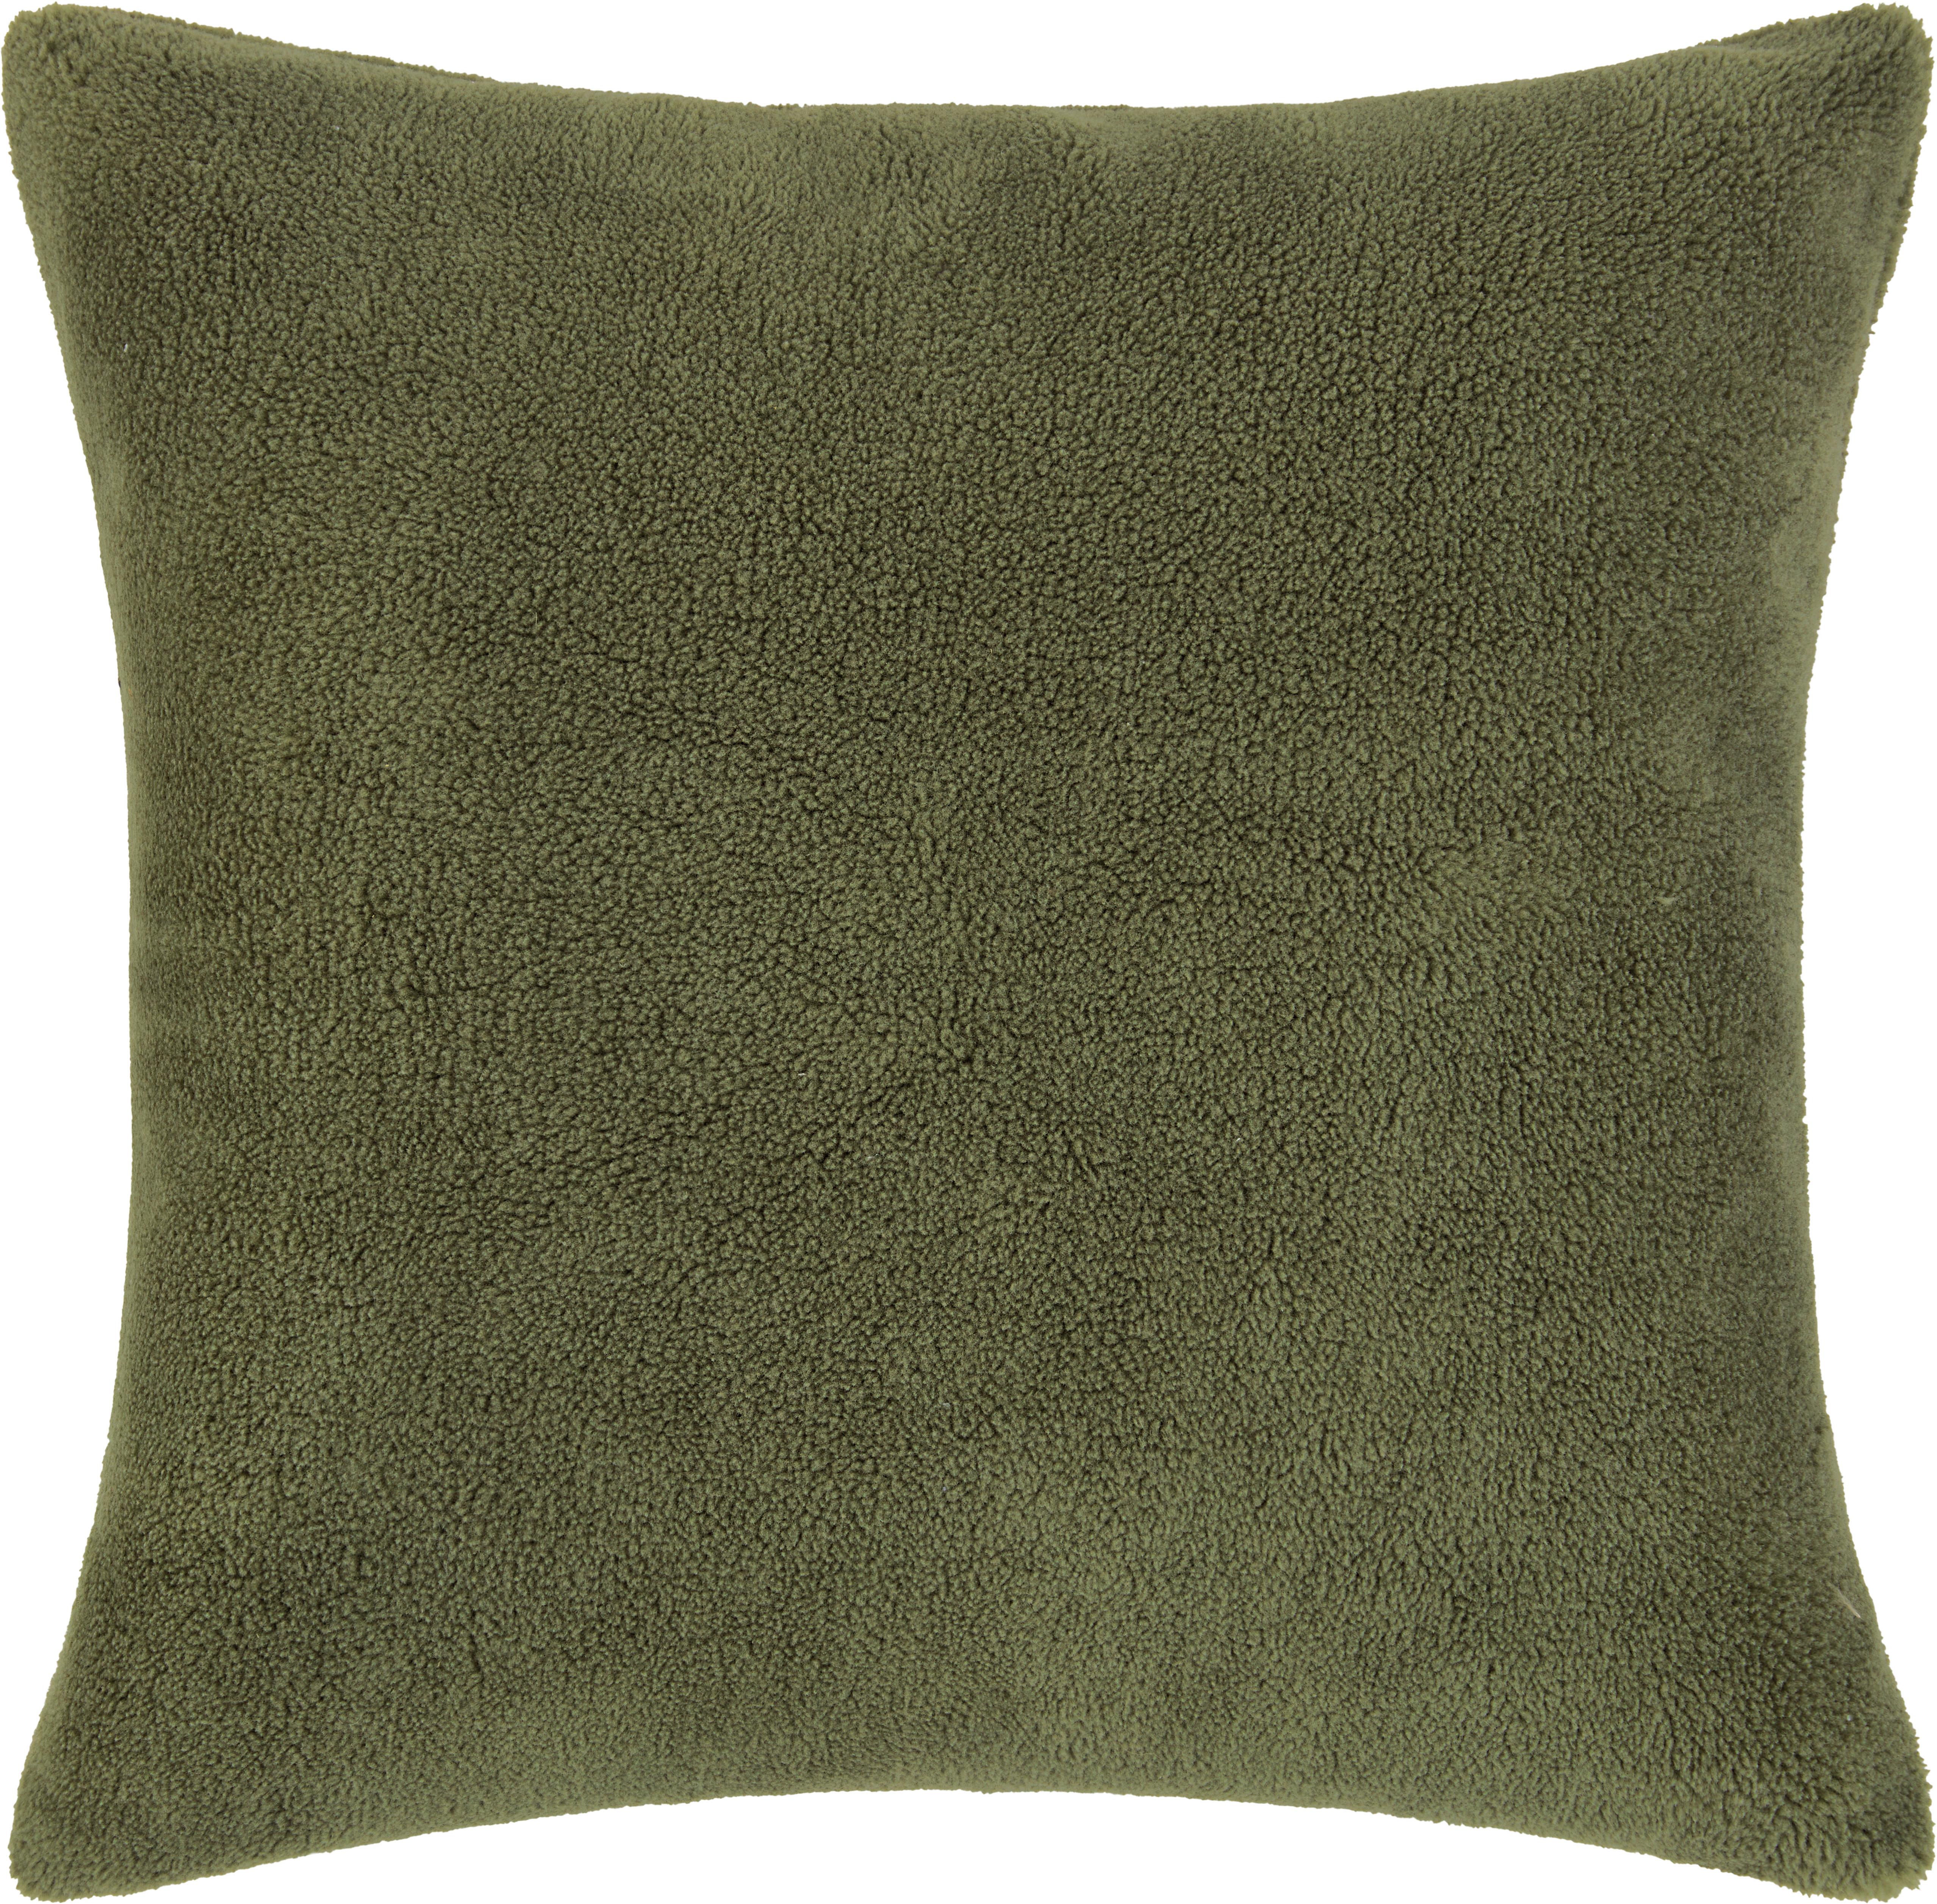 Dekoračný Vankúš Fake Sheep, 45/45cm, Zelená - zelená, Moderný, textil (45/45cm) - Modern Living